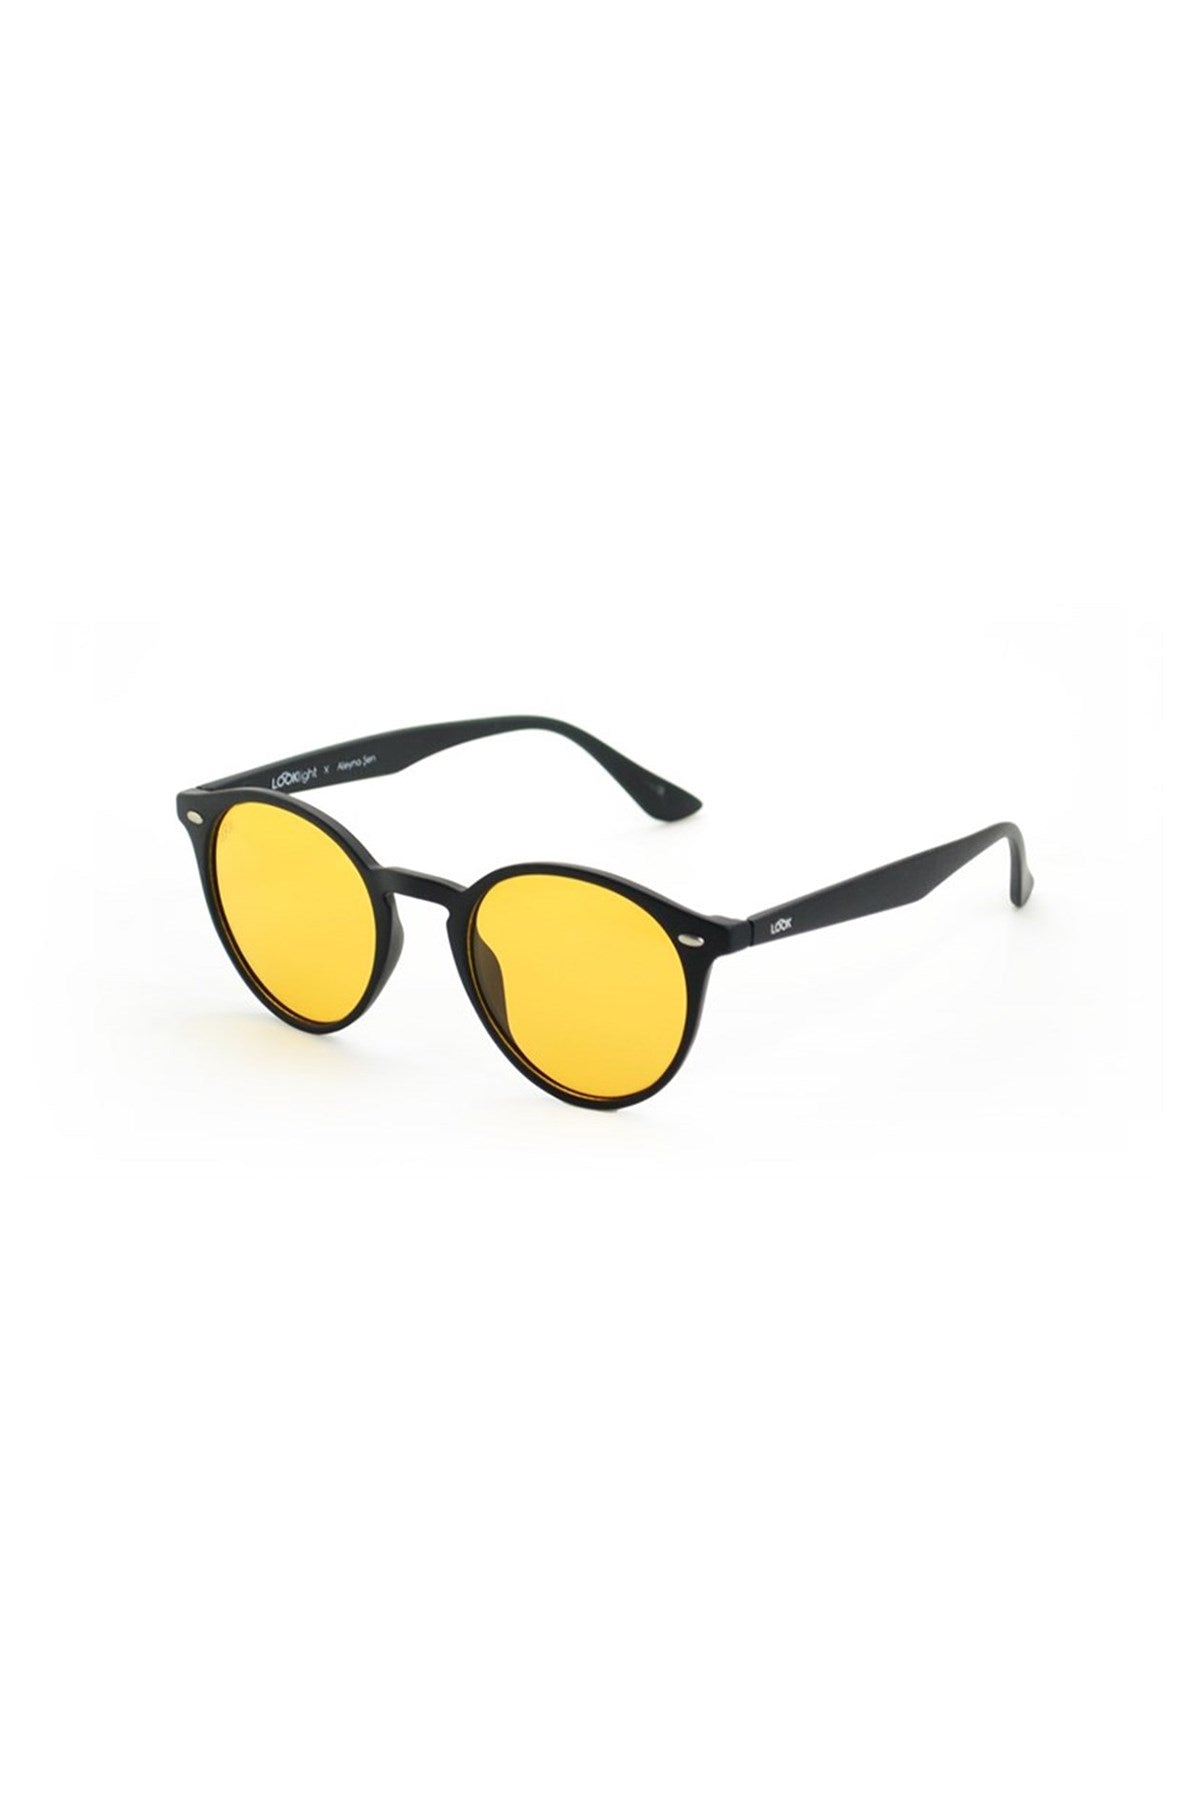 Looklight Letoon S-size Matte Black Yetişkin Güneş Gözlüğü